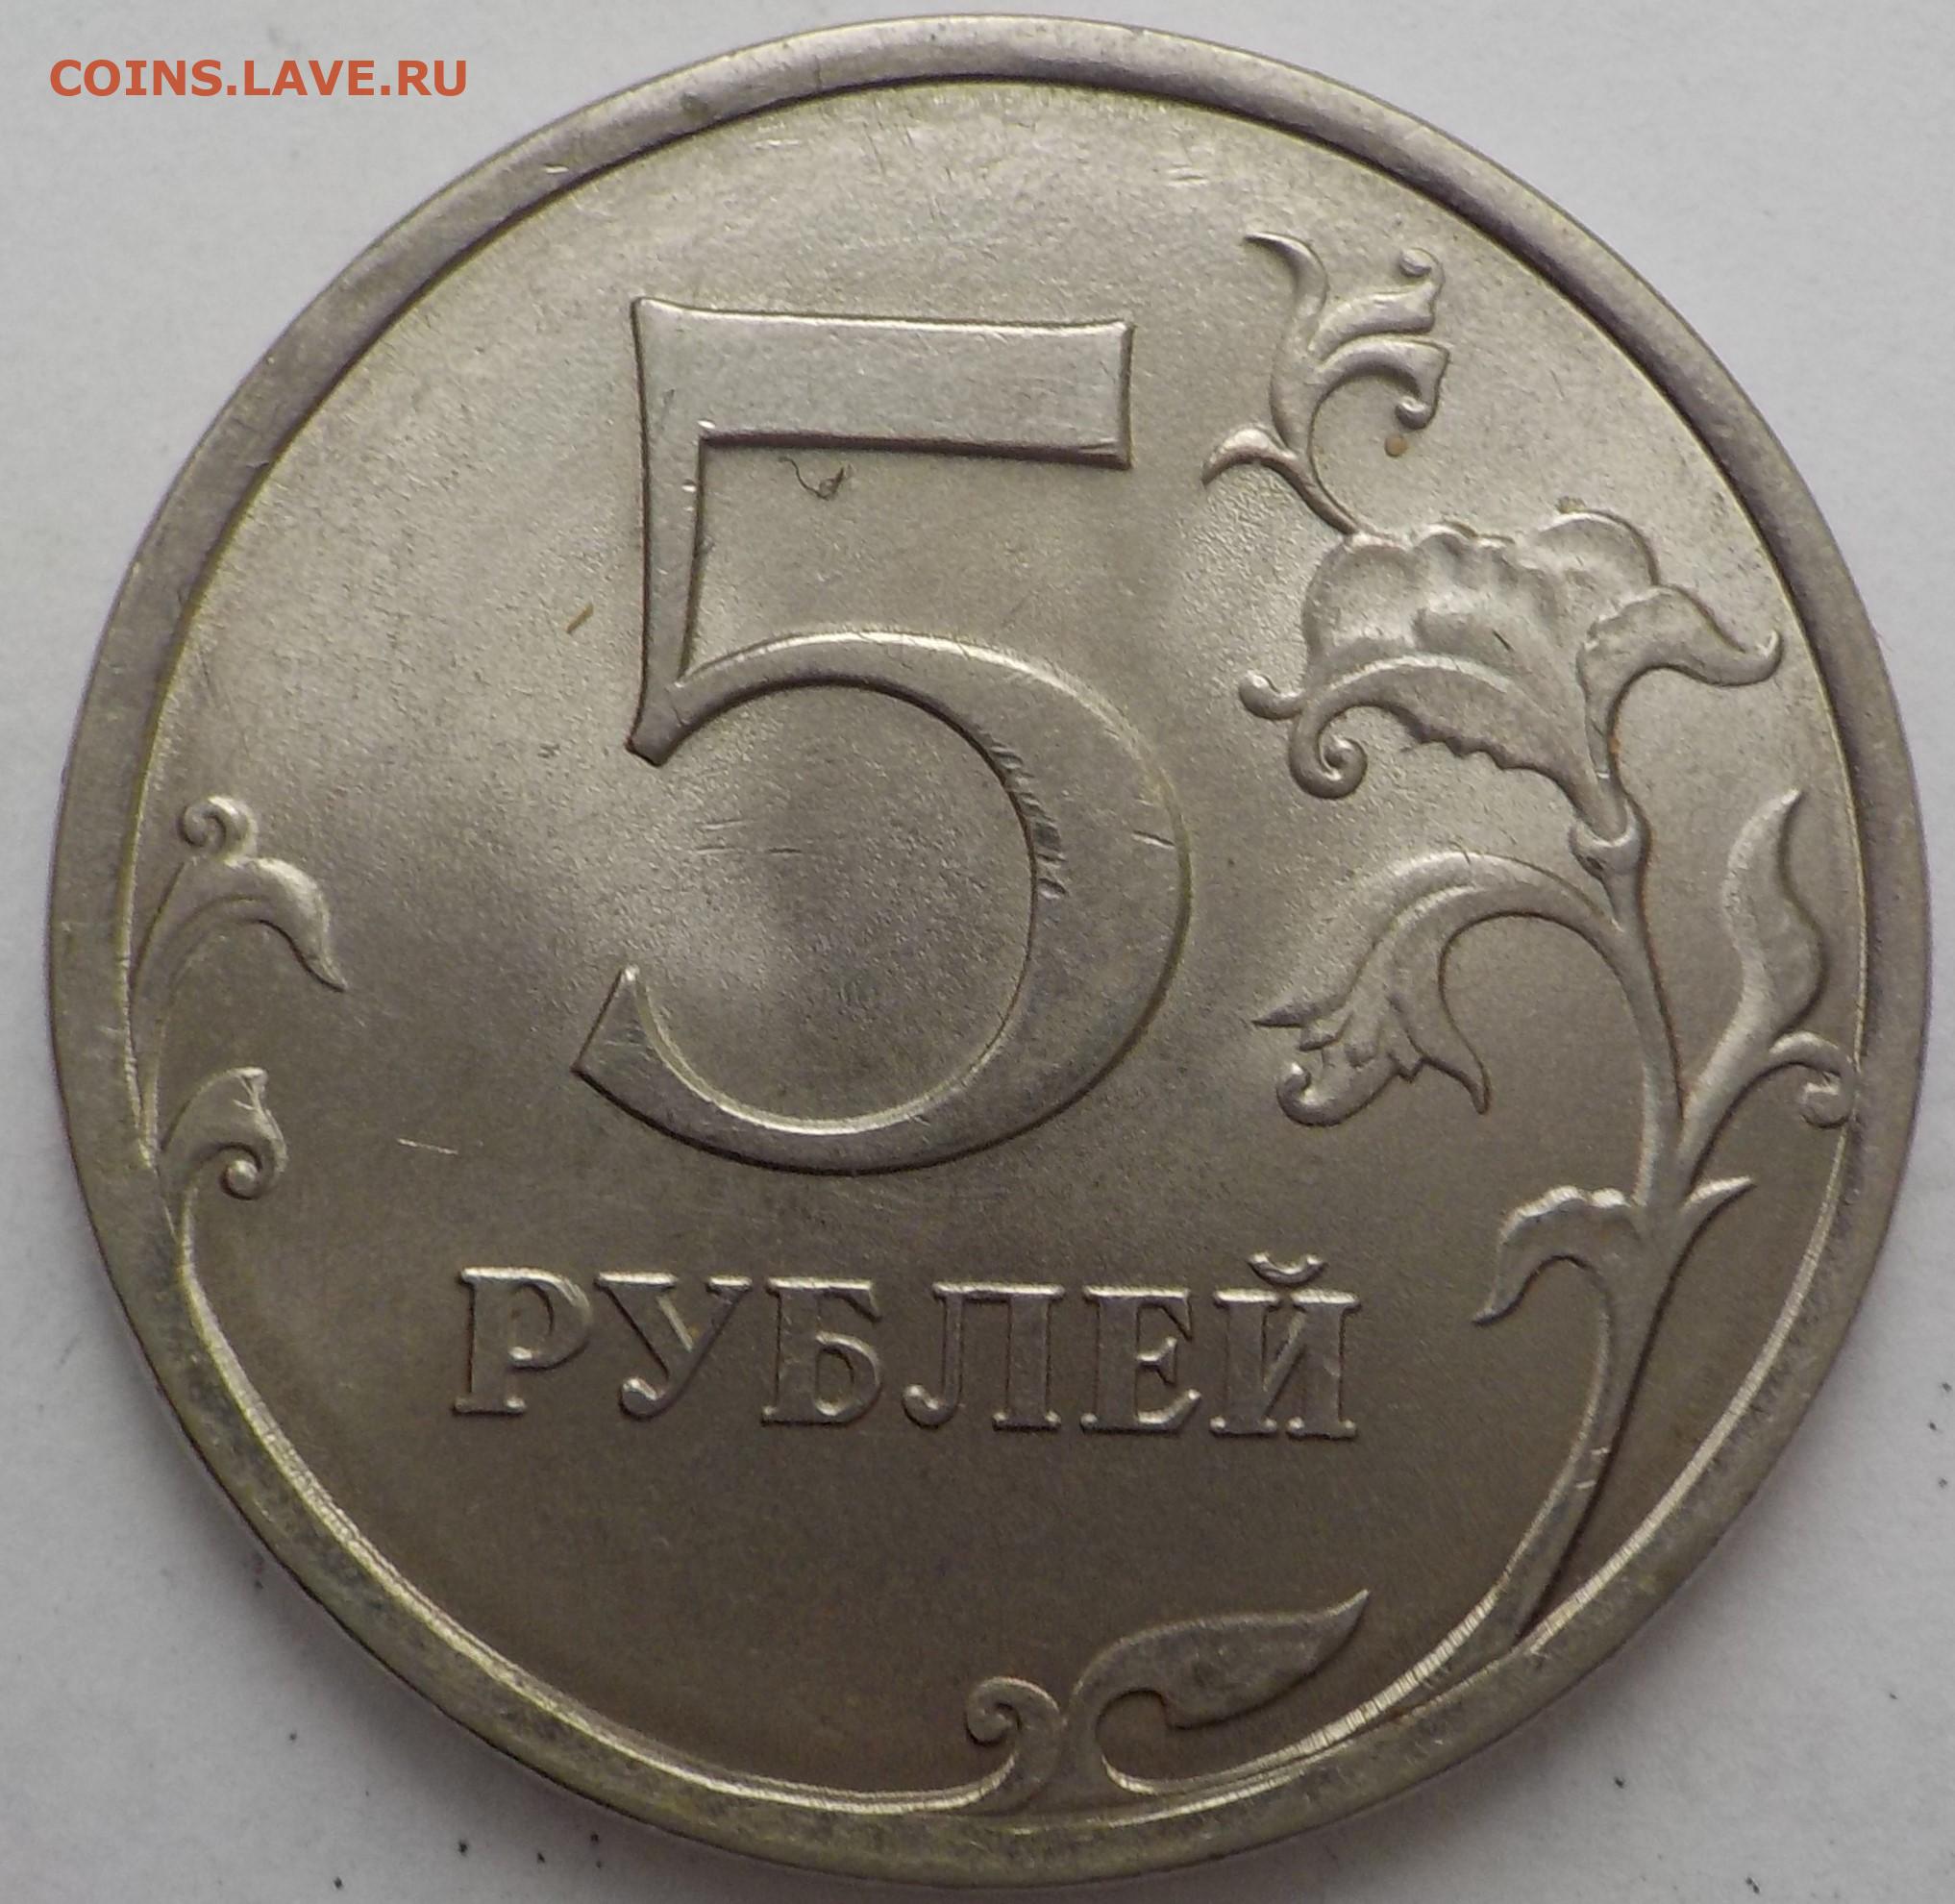 5 рублей хватит. Пять рублей. Размер 5 рублевой монеты. Размер 5 рублей. 5 Рублей картинка.